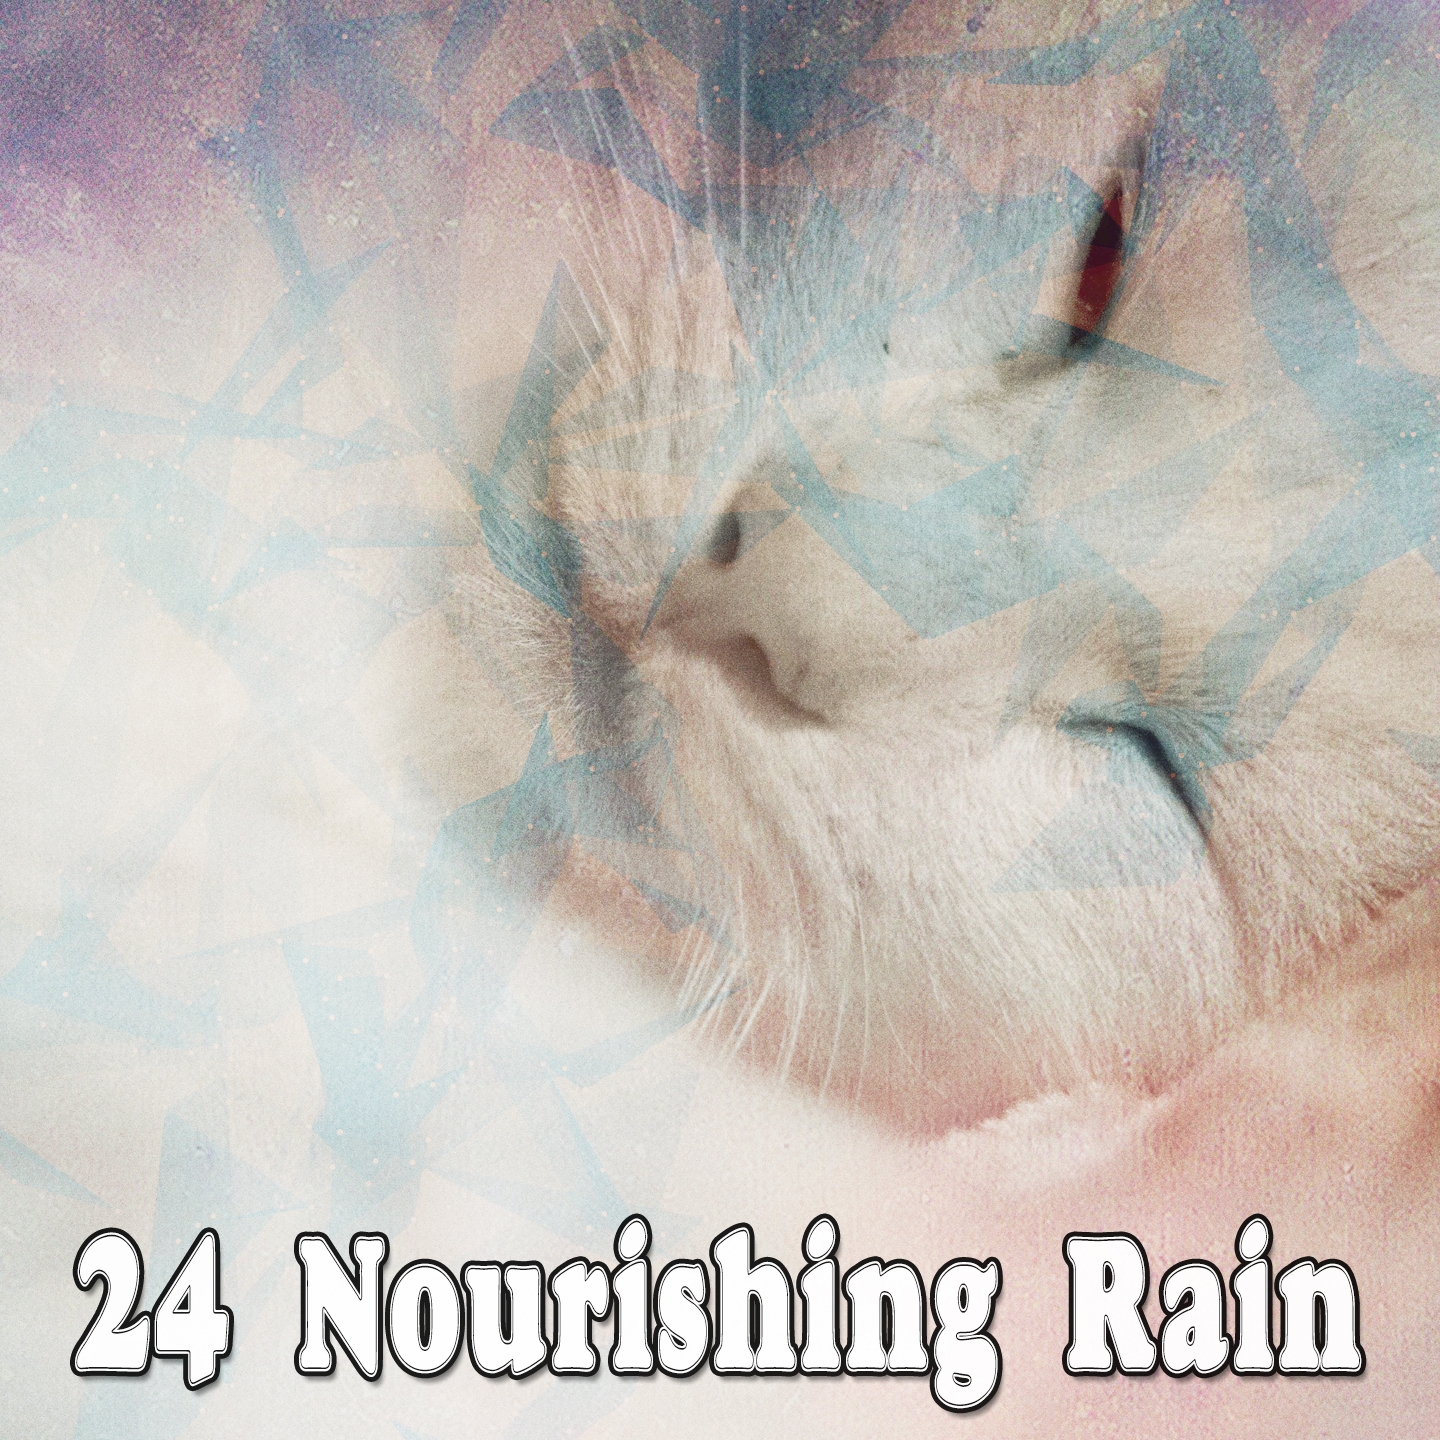 24 Nourishing Rain